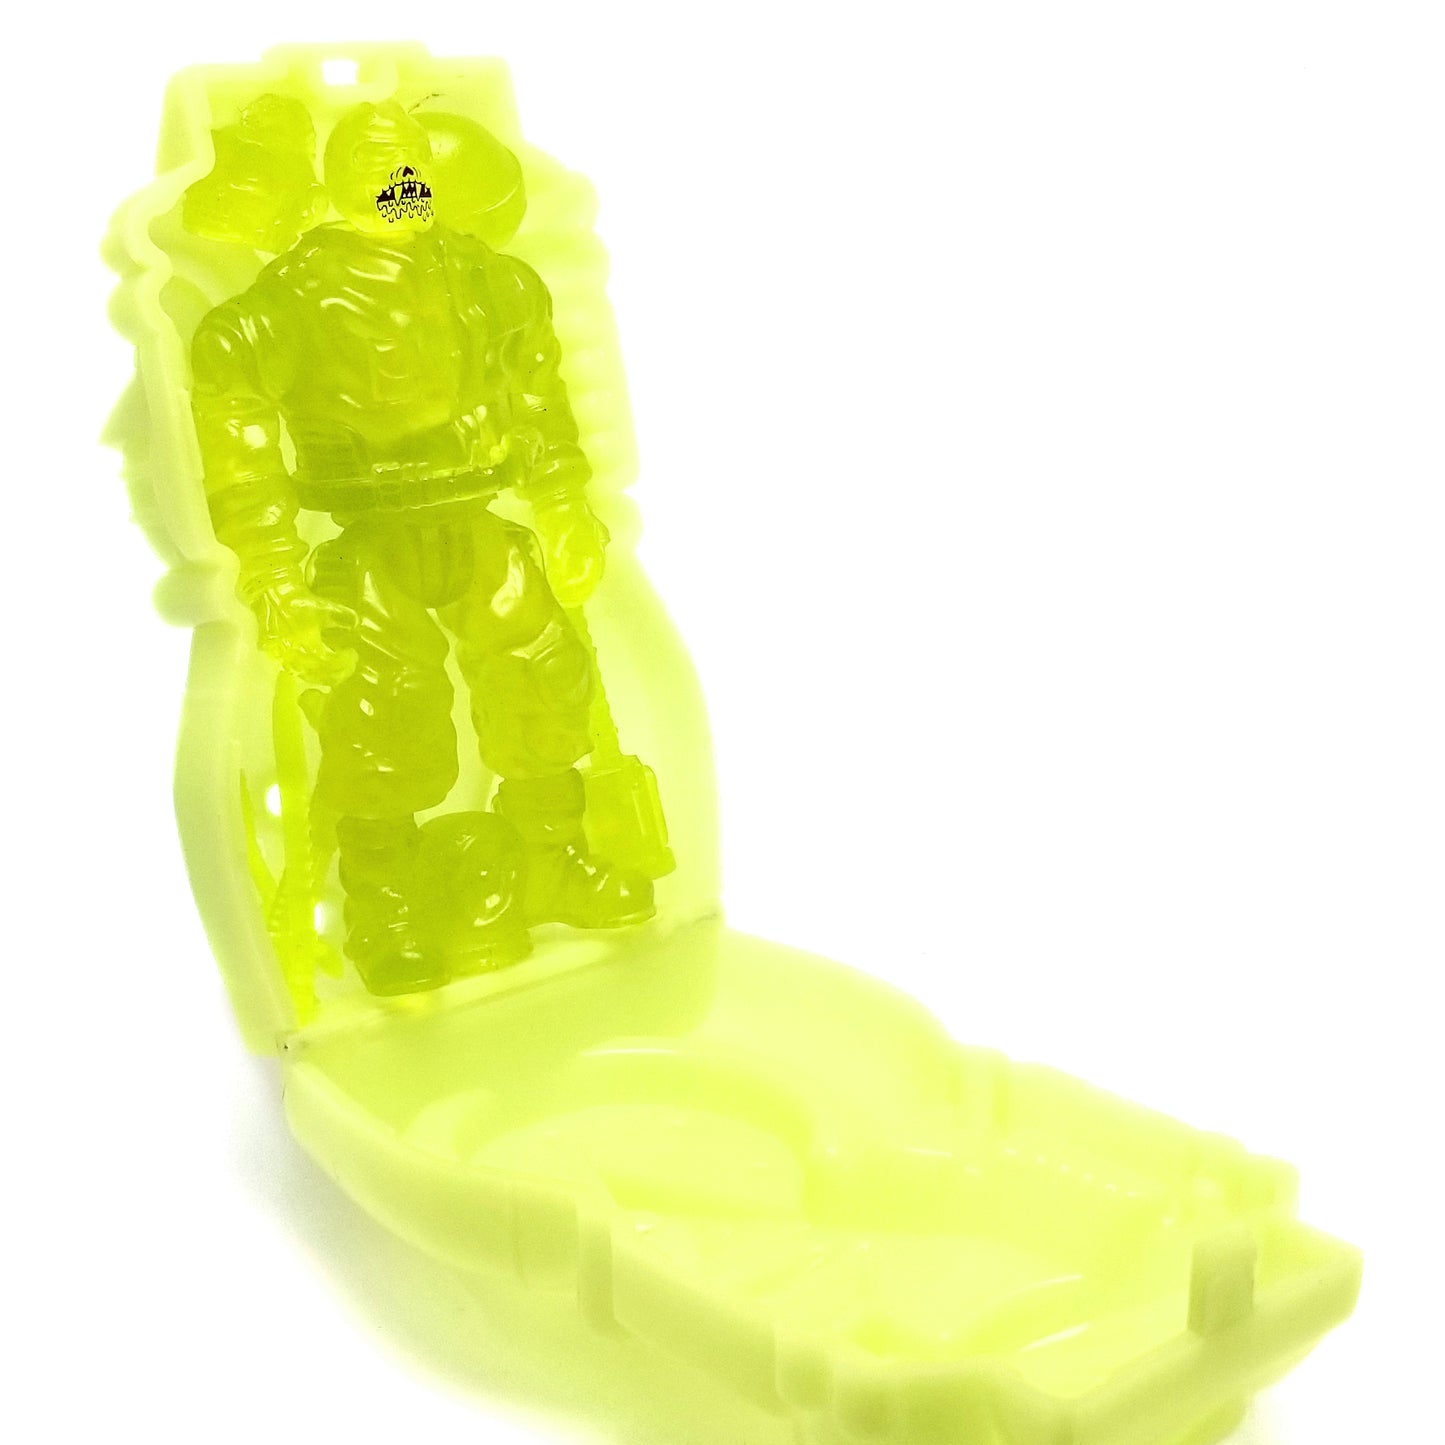 Dew Ghoul 2 w/ Green Ghost Capsule Set